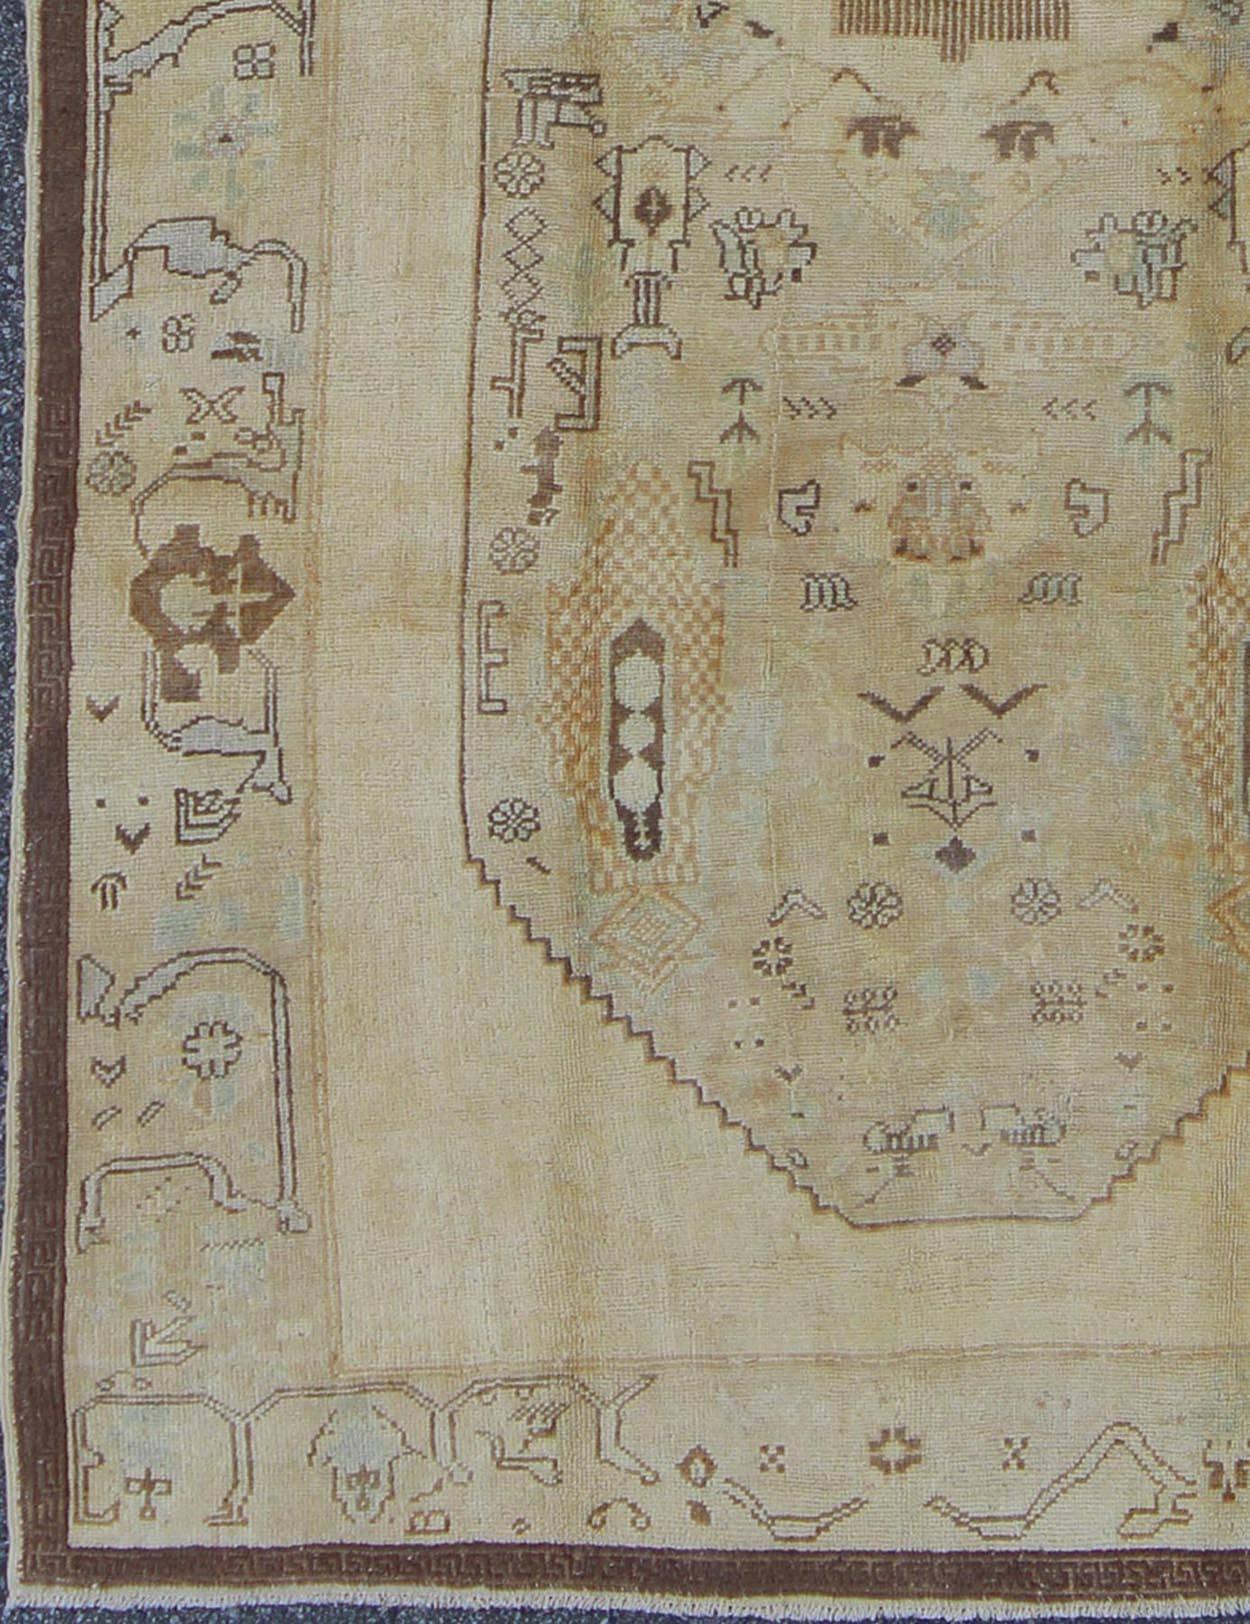 Türkischer Oushak-Teppich mit Stammesfiguren in einer erdigen Farbpalette/de-654  herkunft/Türkei 

Dieser türkische Oushak-Teppich im Vintage-Stil zeichnet sich durch eine erdige Farbmischung und ein kompliziertes, schönes Design aus. Das zentrale